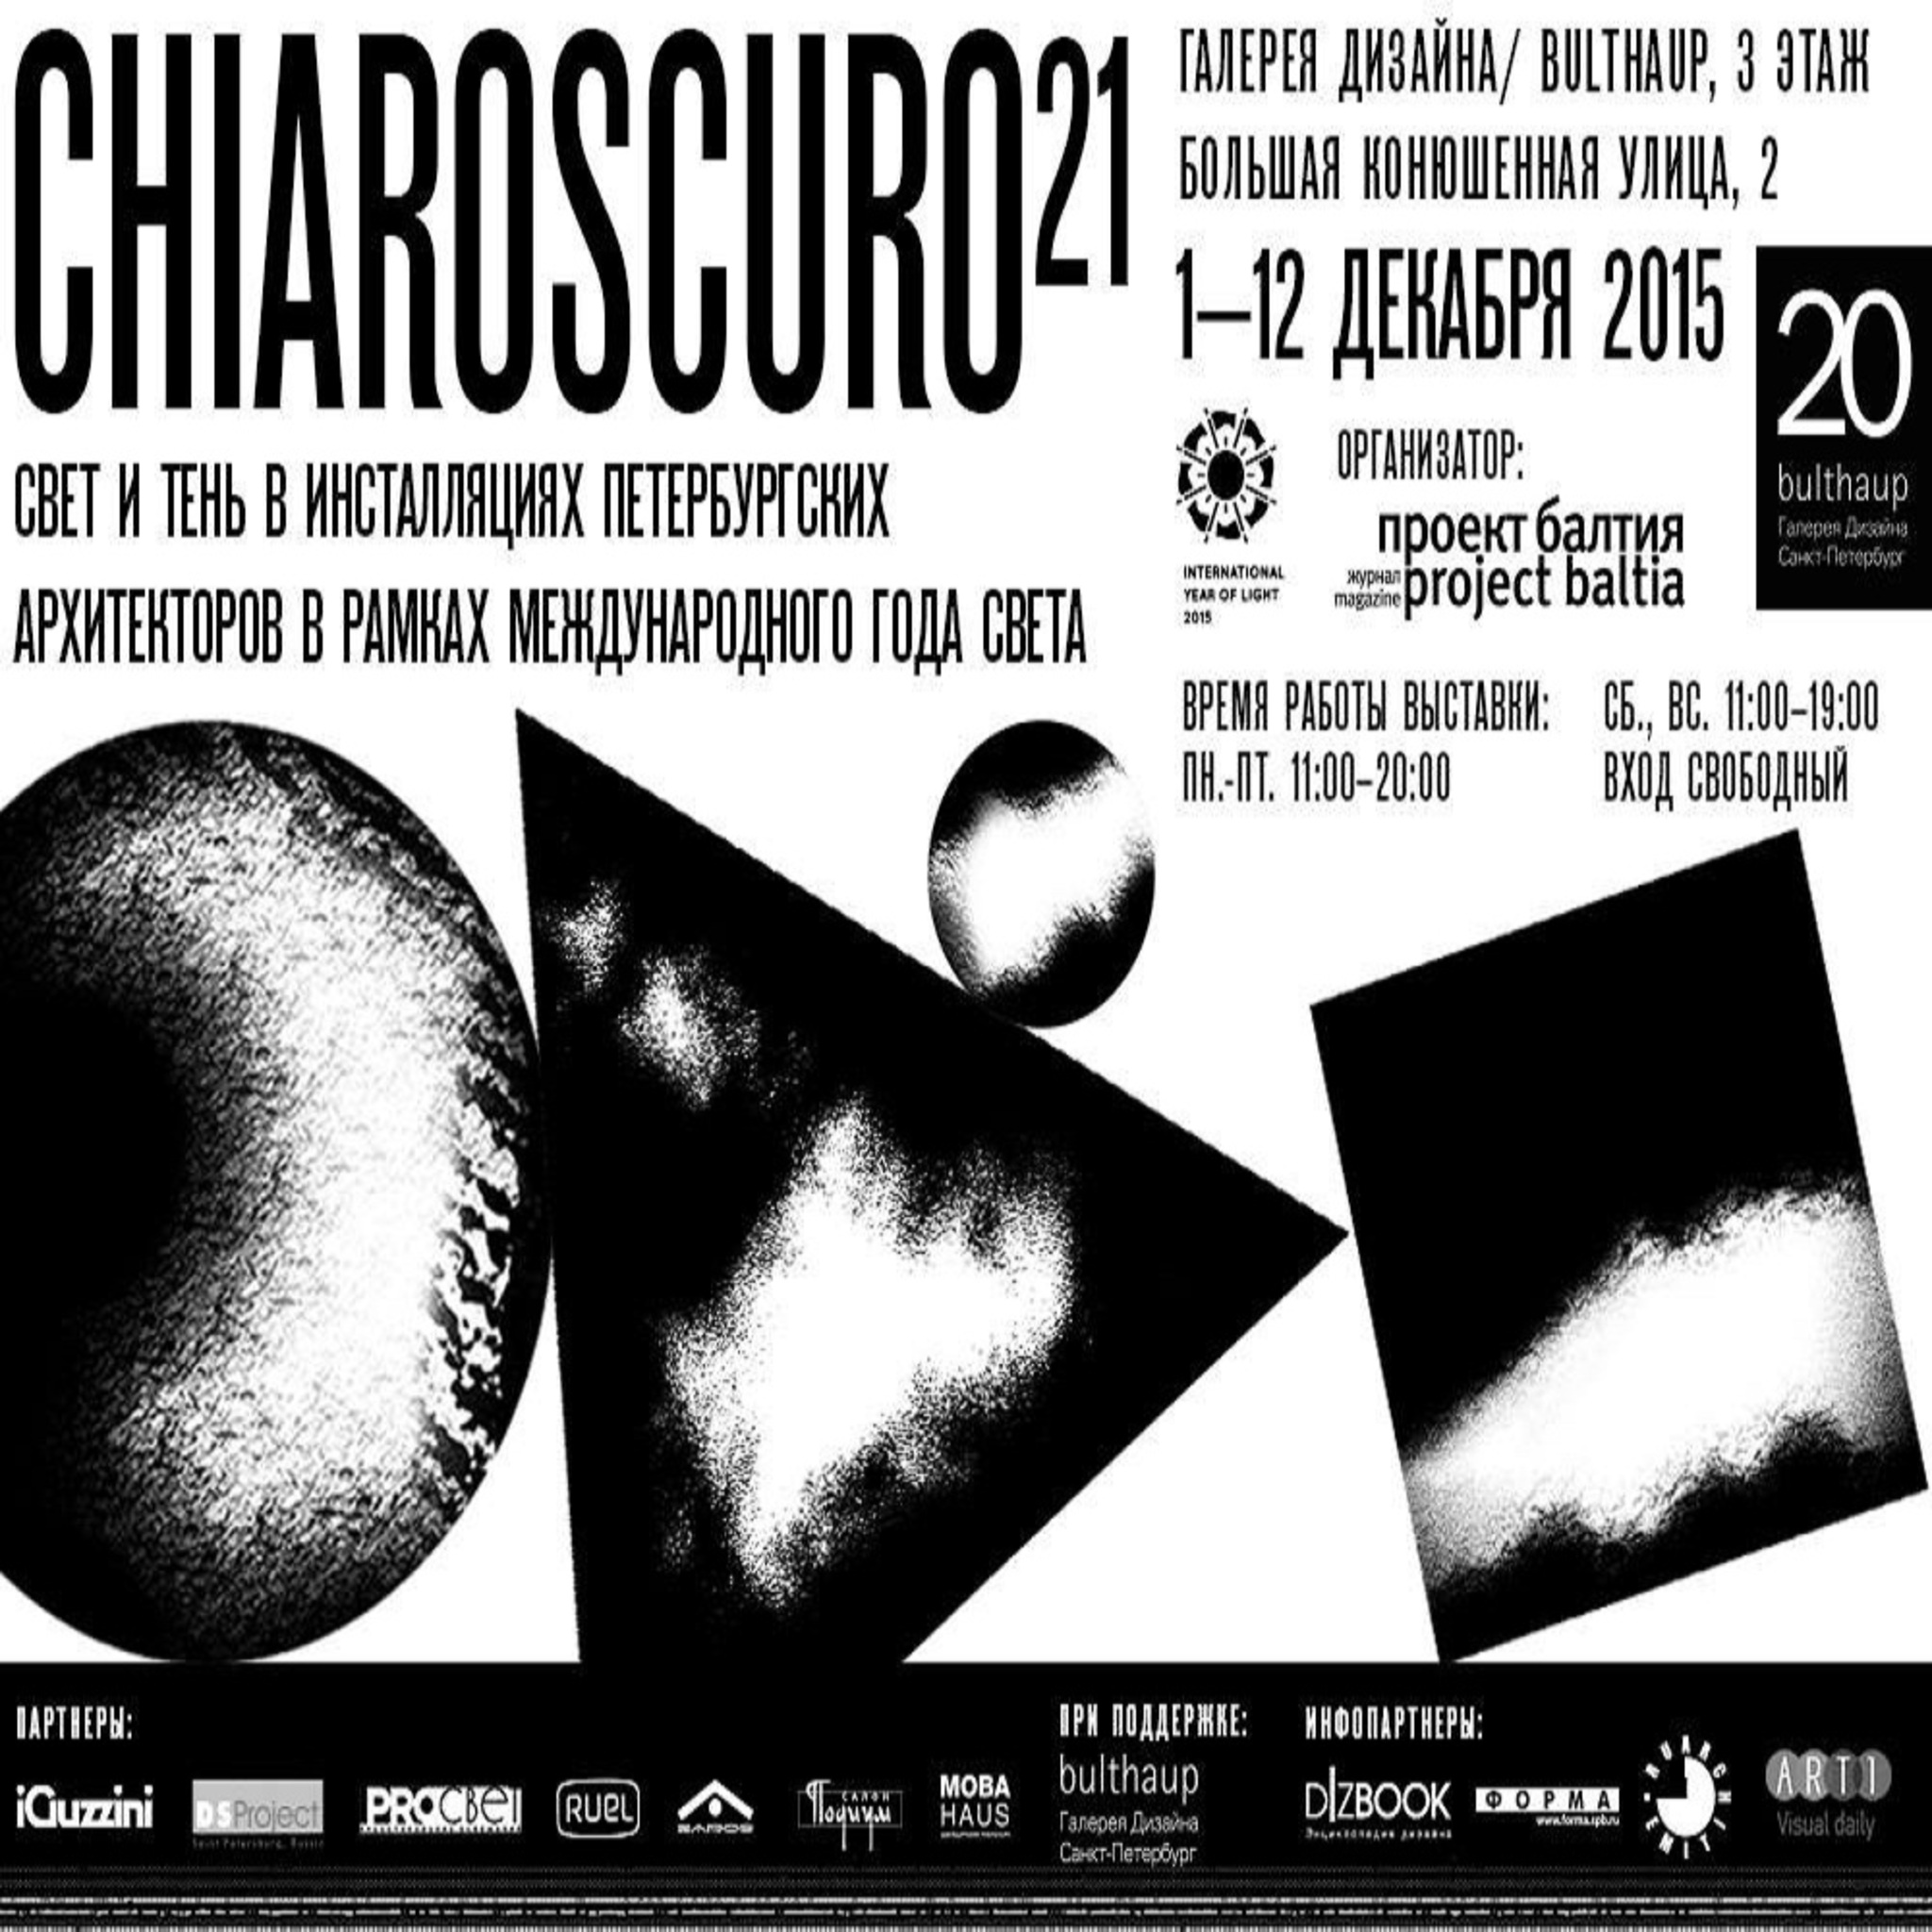 Exhibition installations Chiaroscuro 21